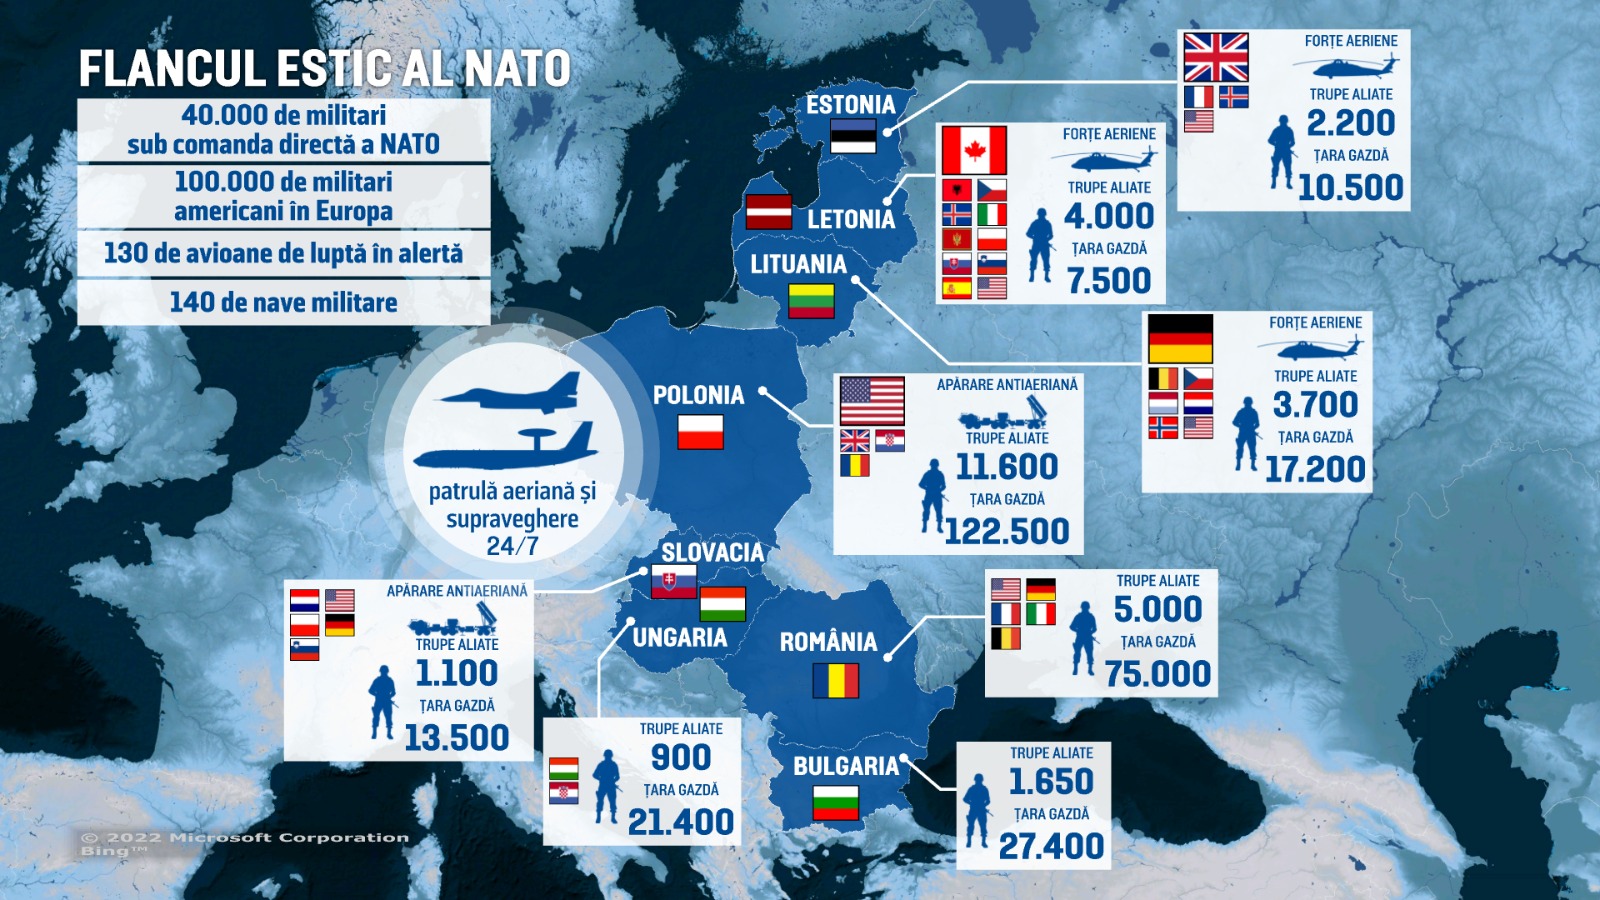 Harta trupelor NATO mobilizate pe flancul estic, inclusiv în România. Stoltenberg: “Un summit istoric”